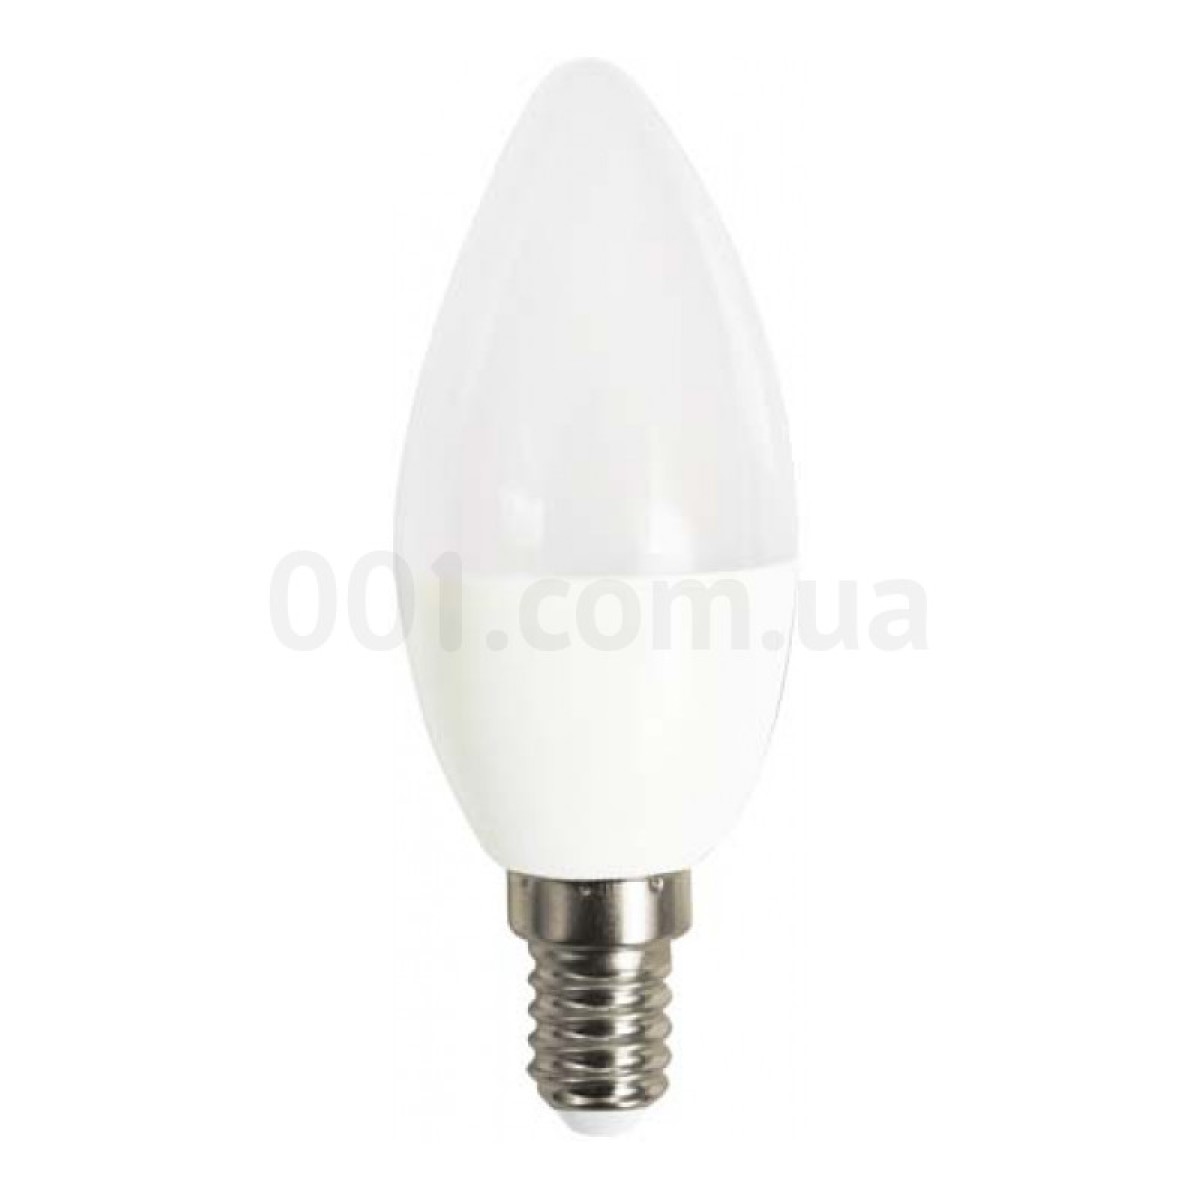 Светодиодная лампа LB-737 C37 (свеча) 6Вт 4000K E14, Feron 256_256.jpg